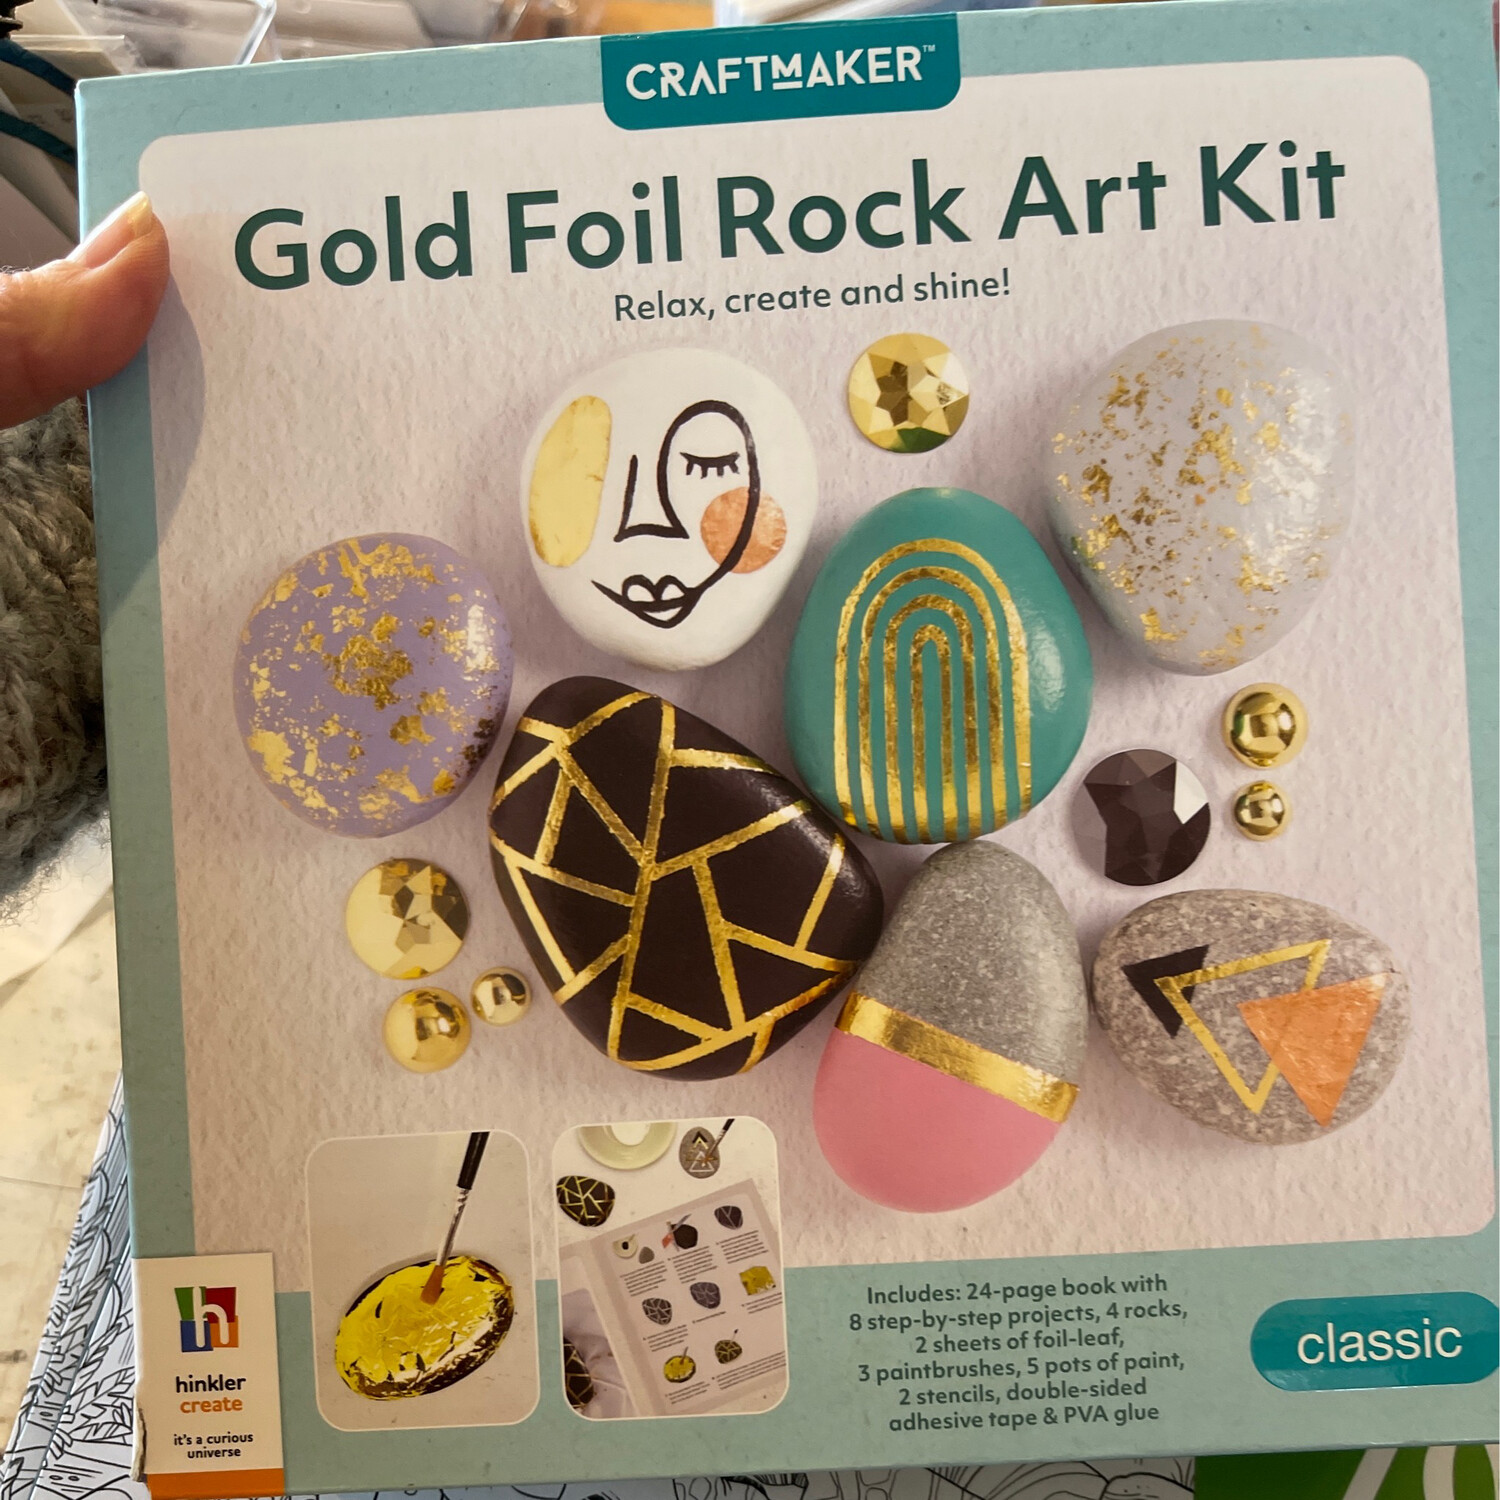 Craftmaker Gold Foil Rock Art